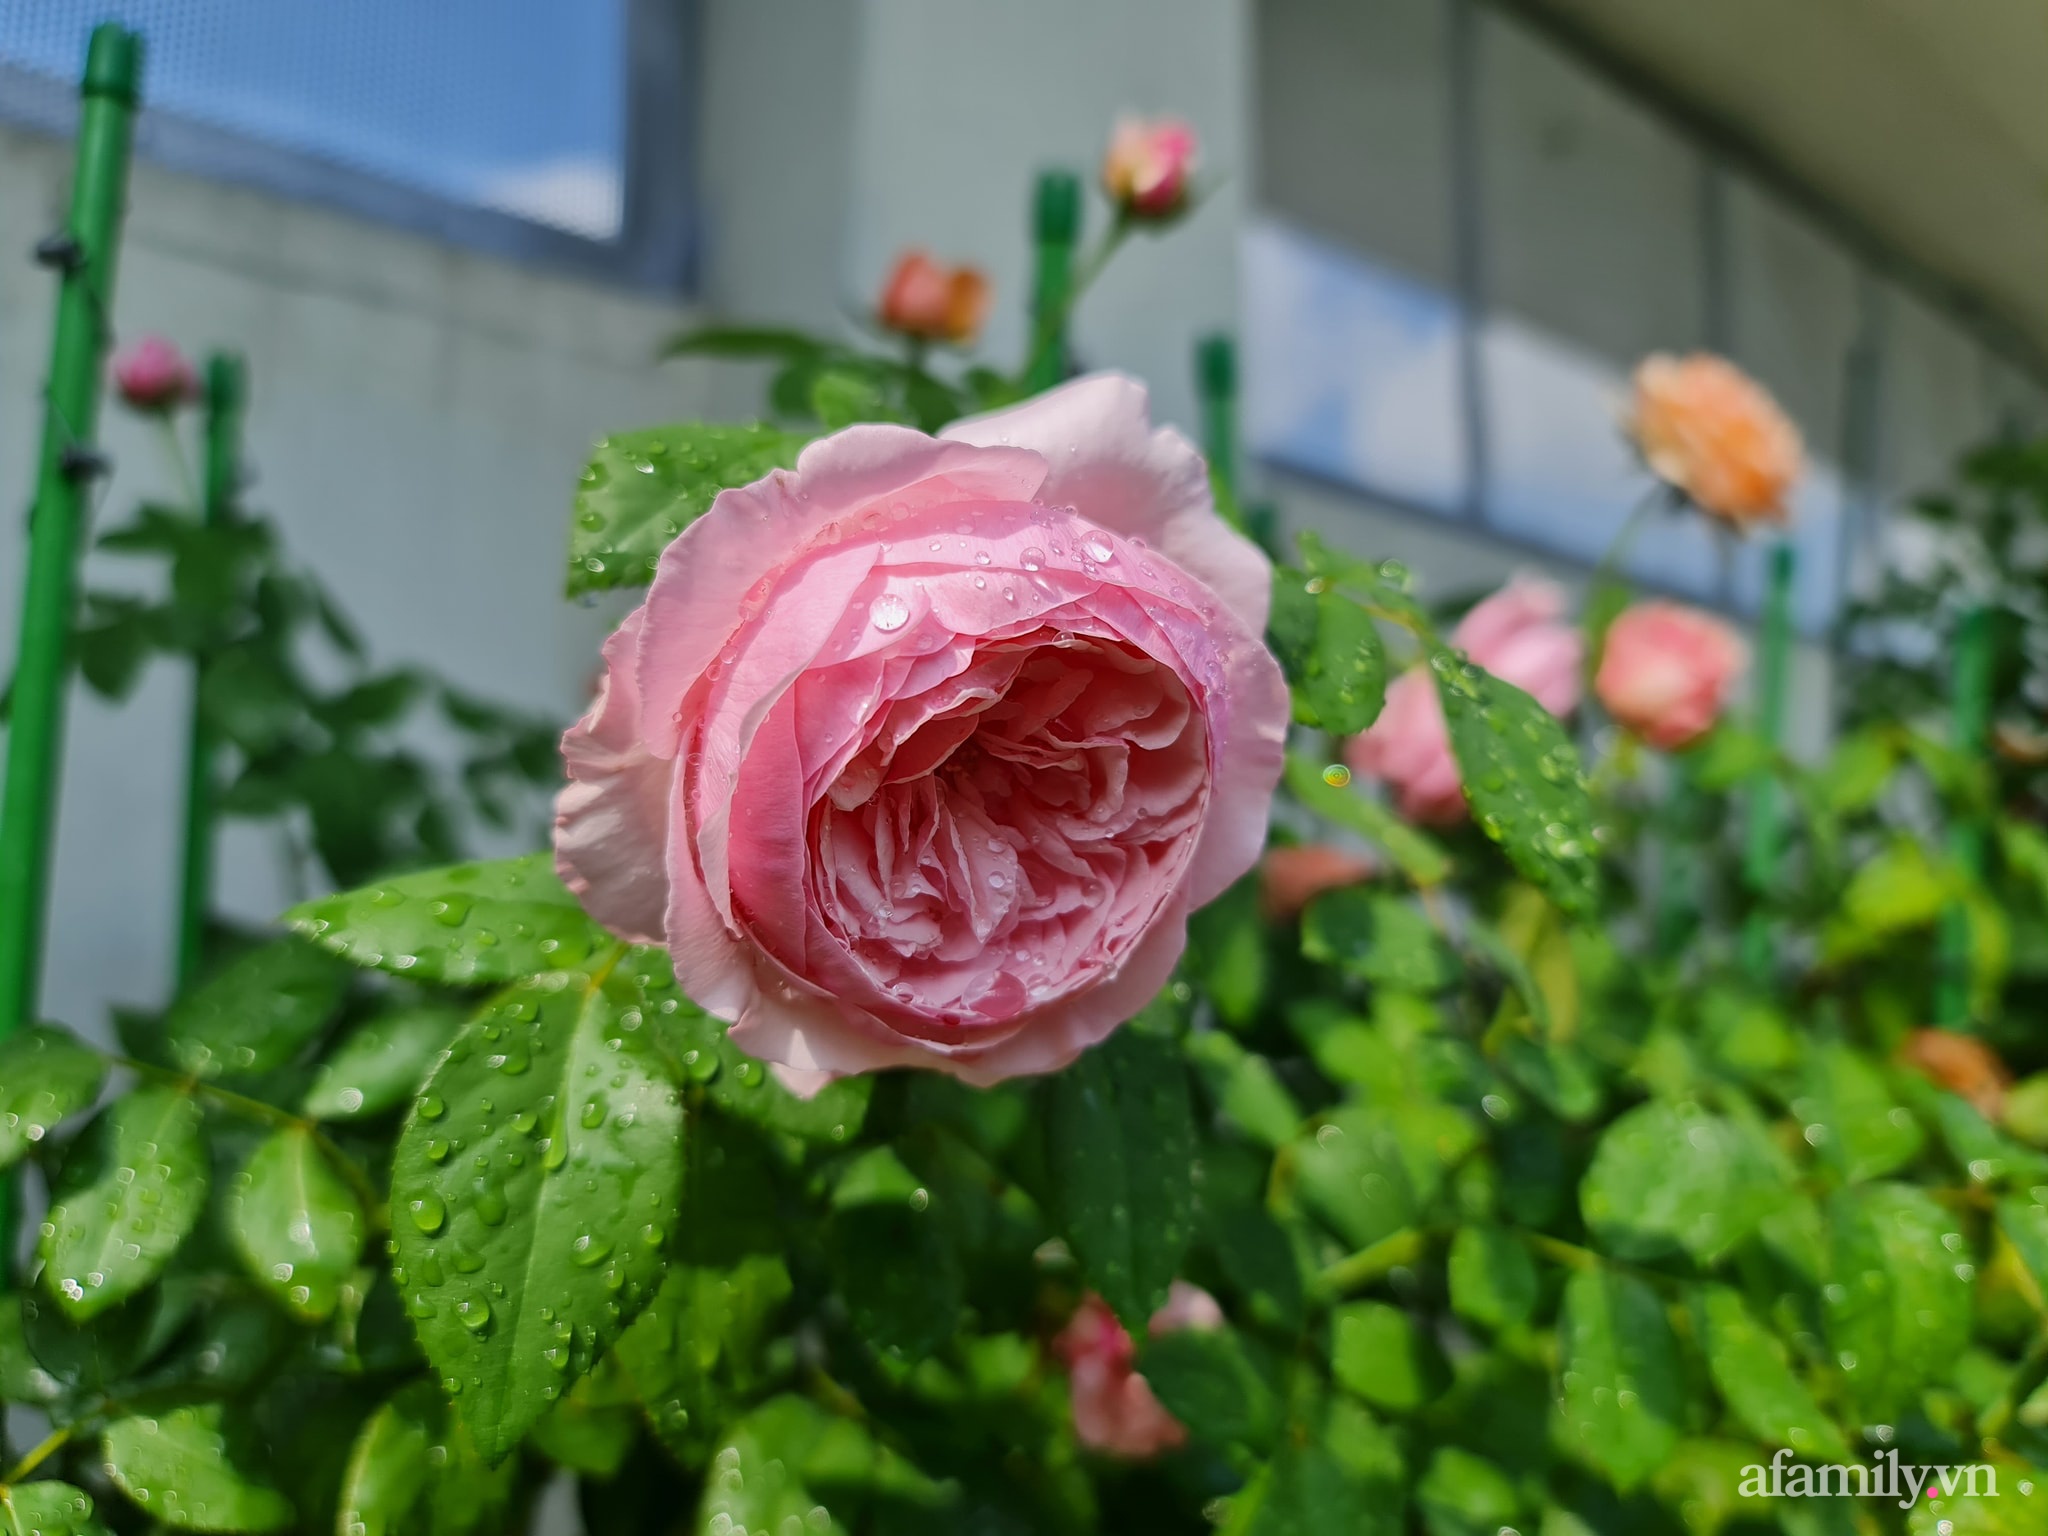 Đắm say trước vẻ đẹp ngọt lịm tim của vườn hồng rực rỡ trên sân thượng ở Bình Dương - Ảnh 21.